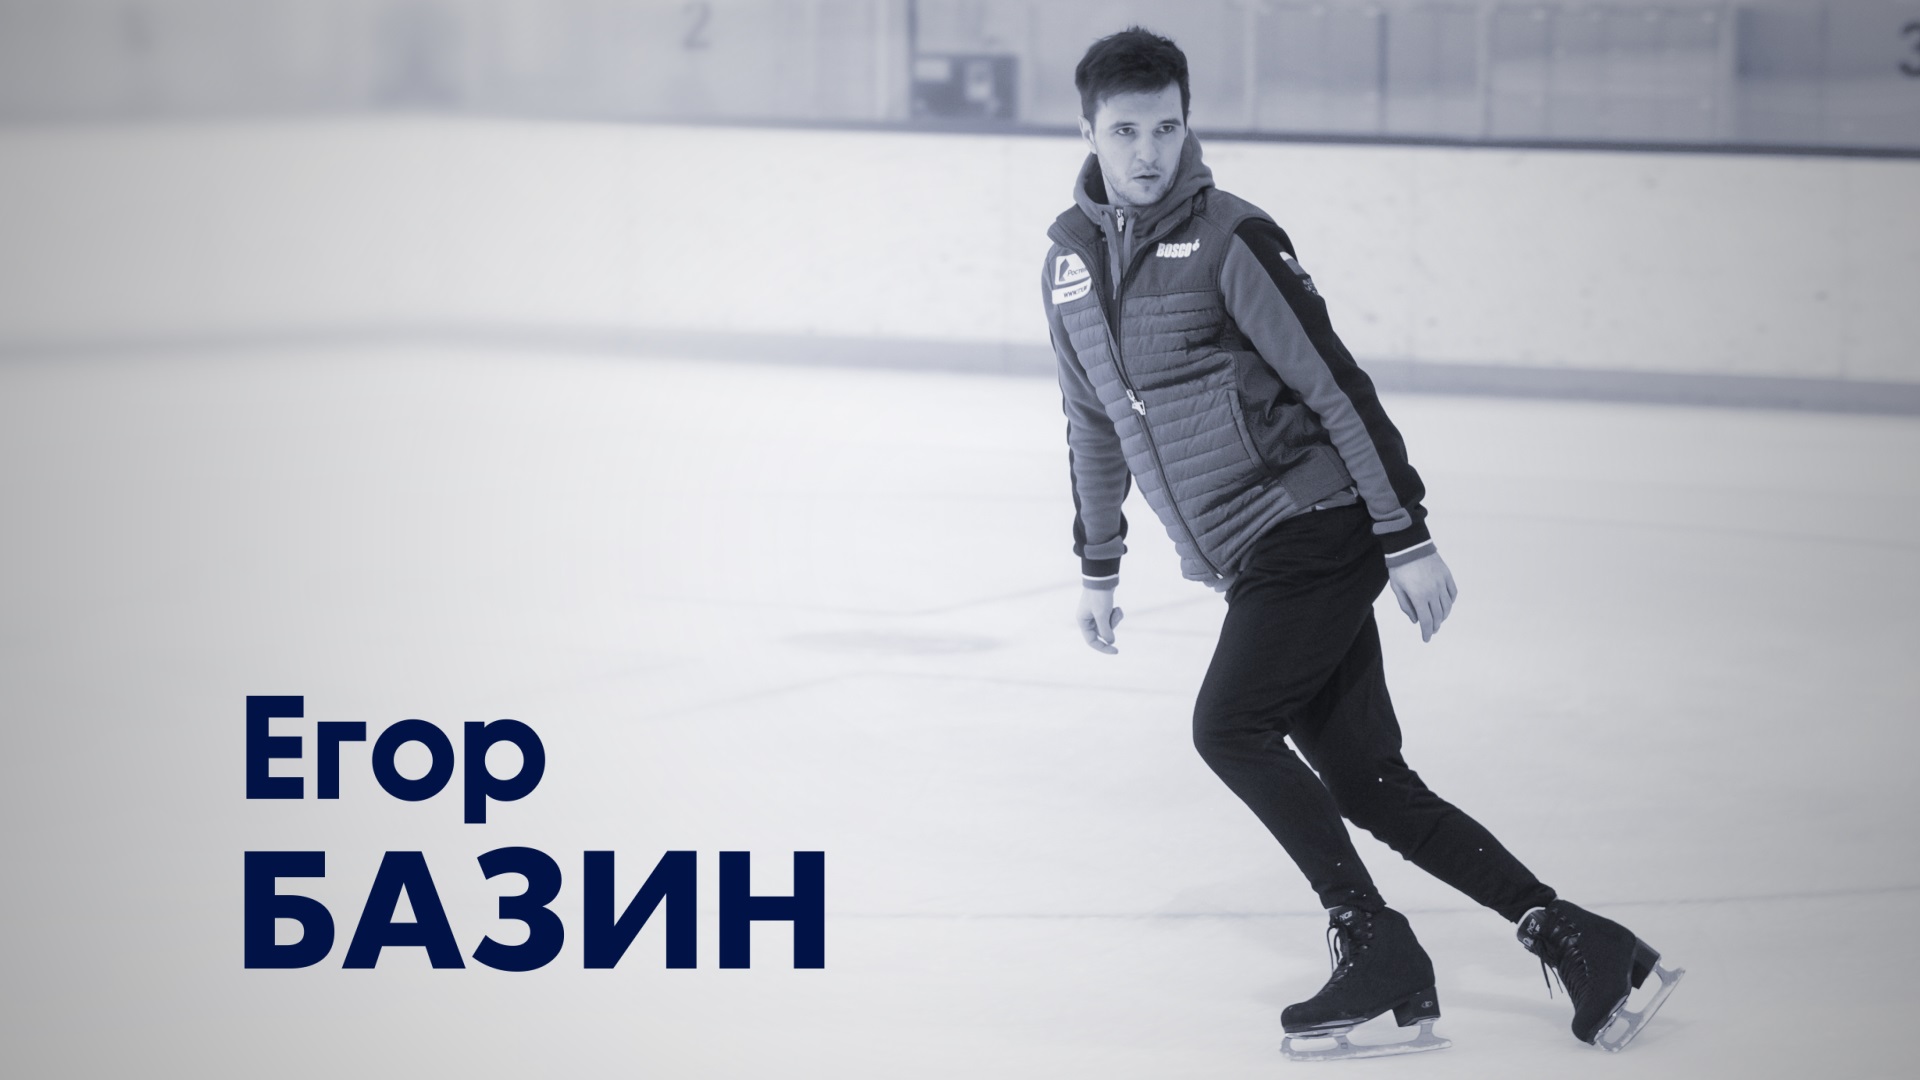 Егор Базин. Мастер спорта России по фигурному катанию на коньках в танцах на льду.